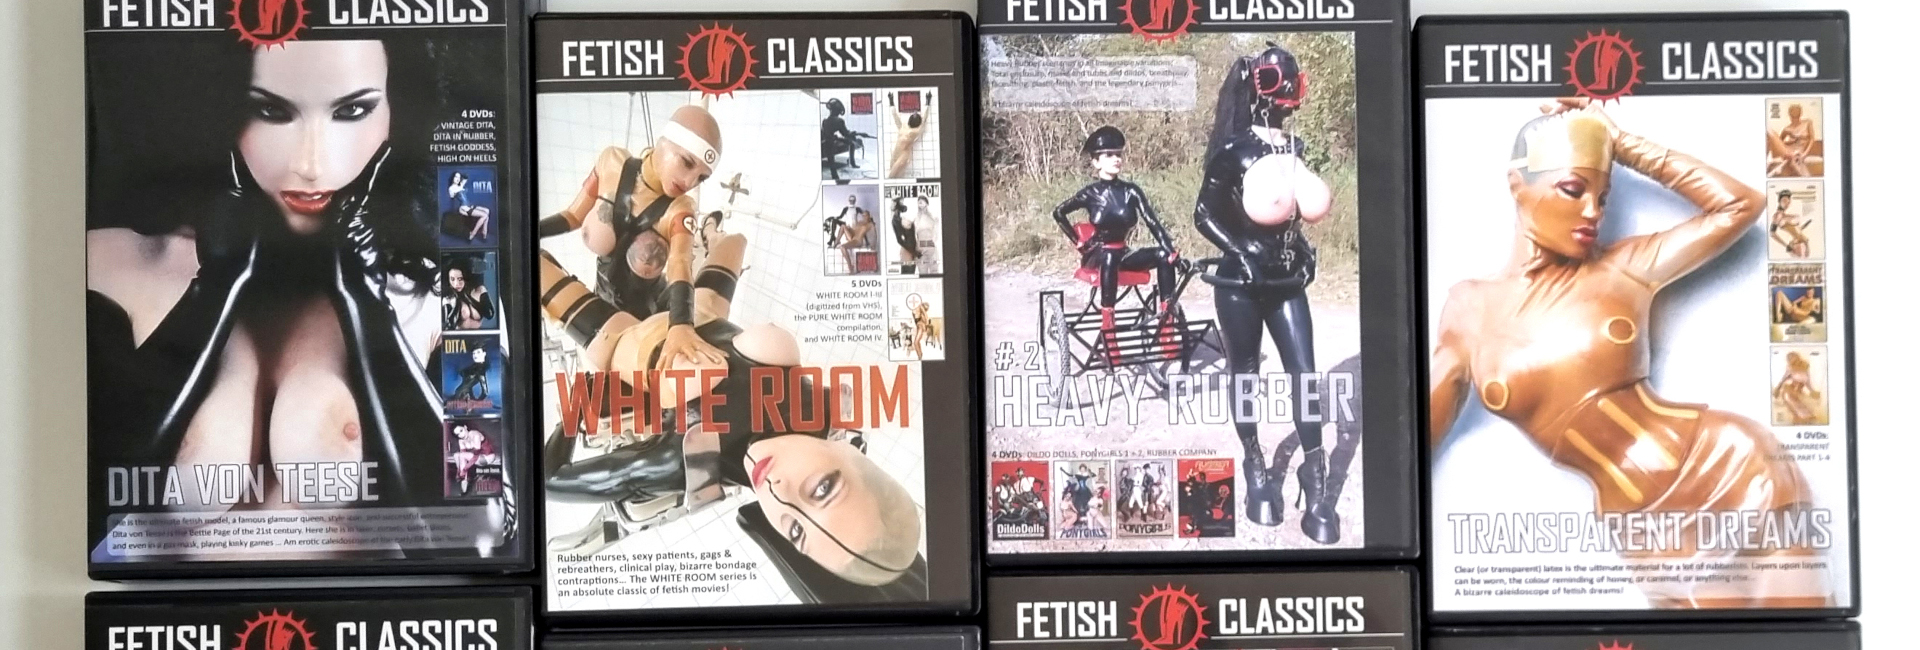 FETISH CLASSICS DVDs